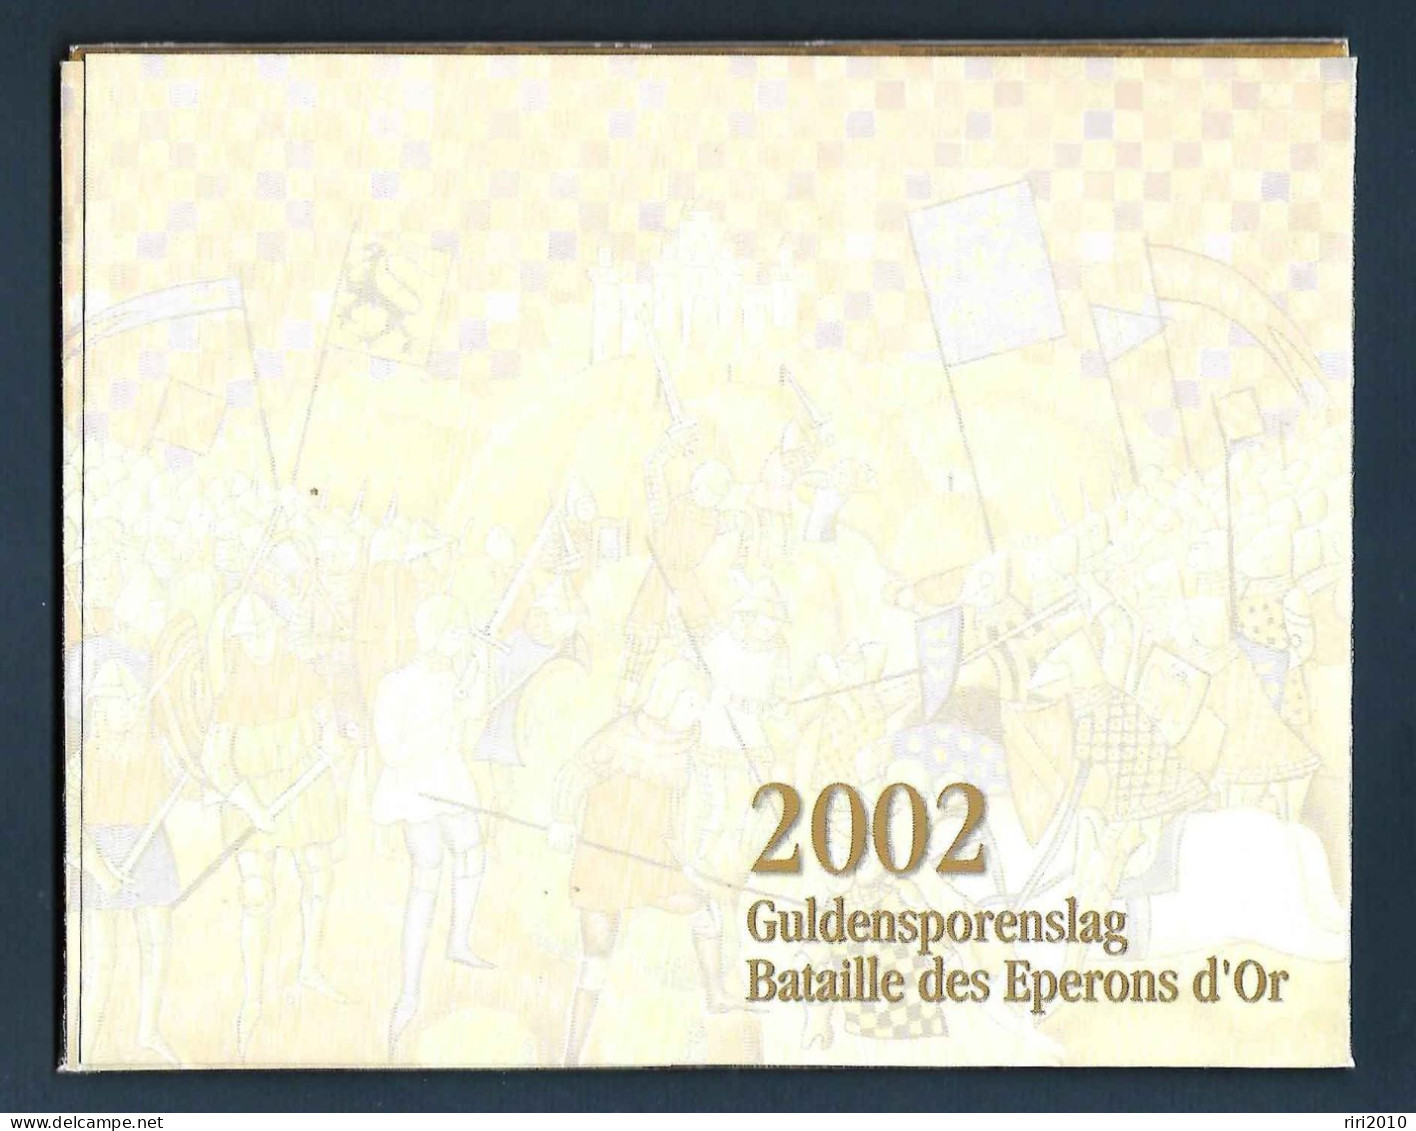 Belgique - Pochette bpost année complète 2002.